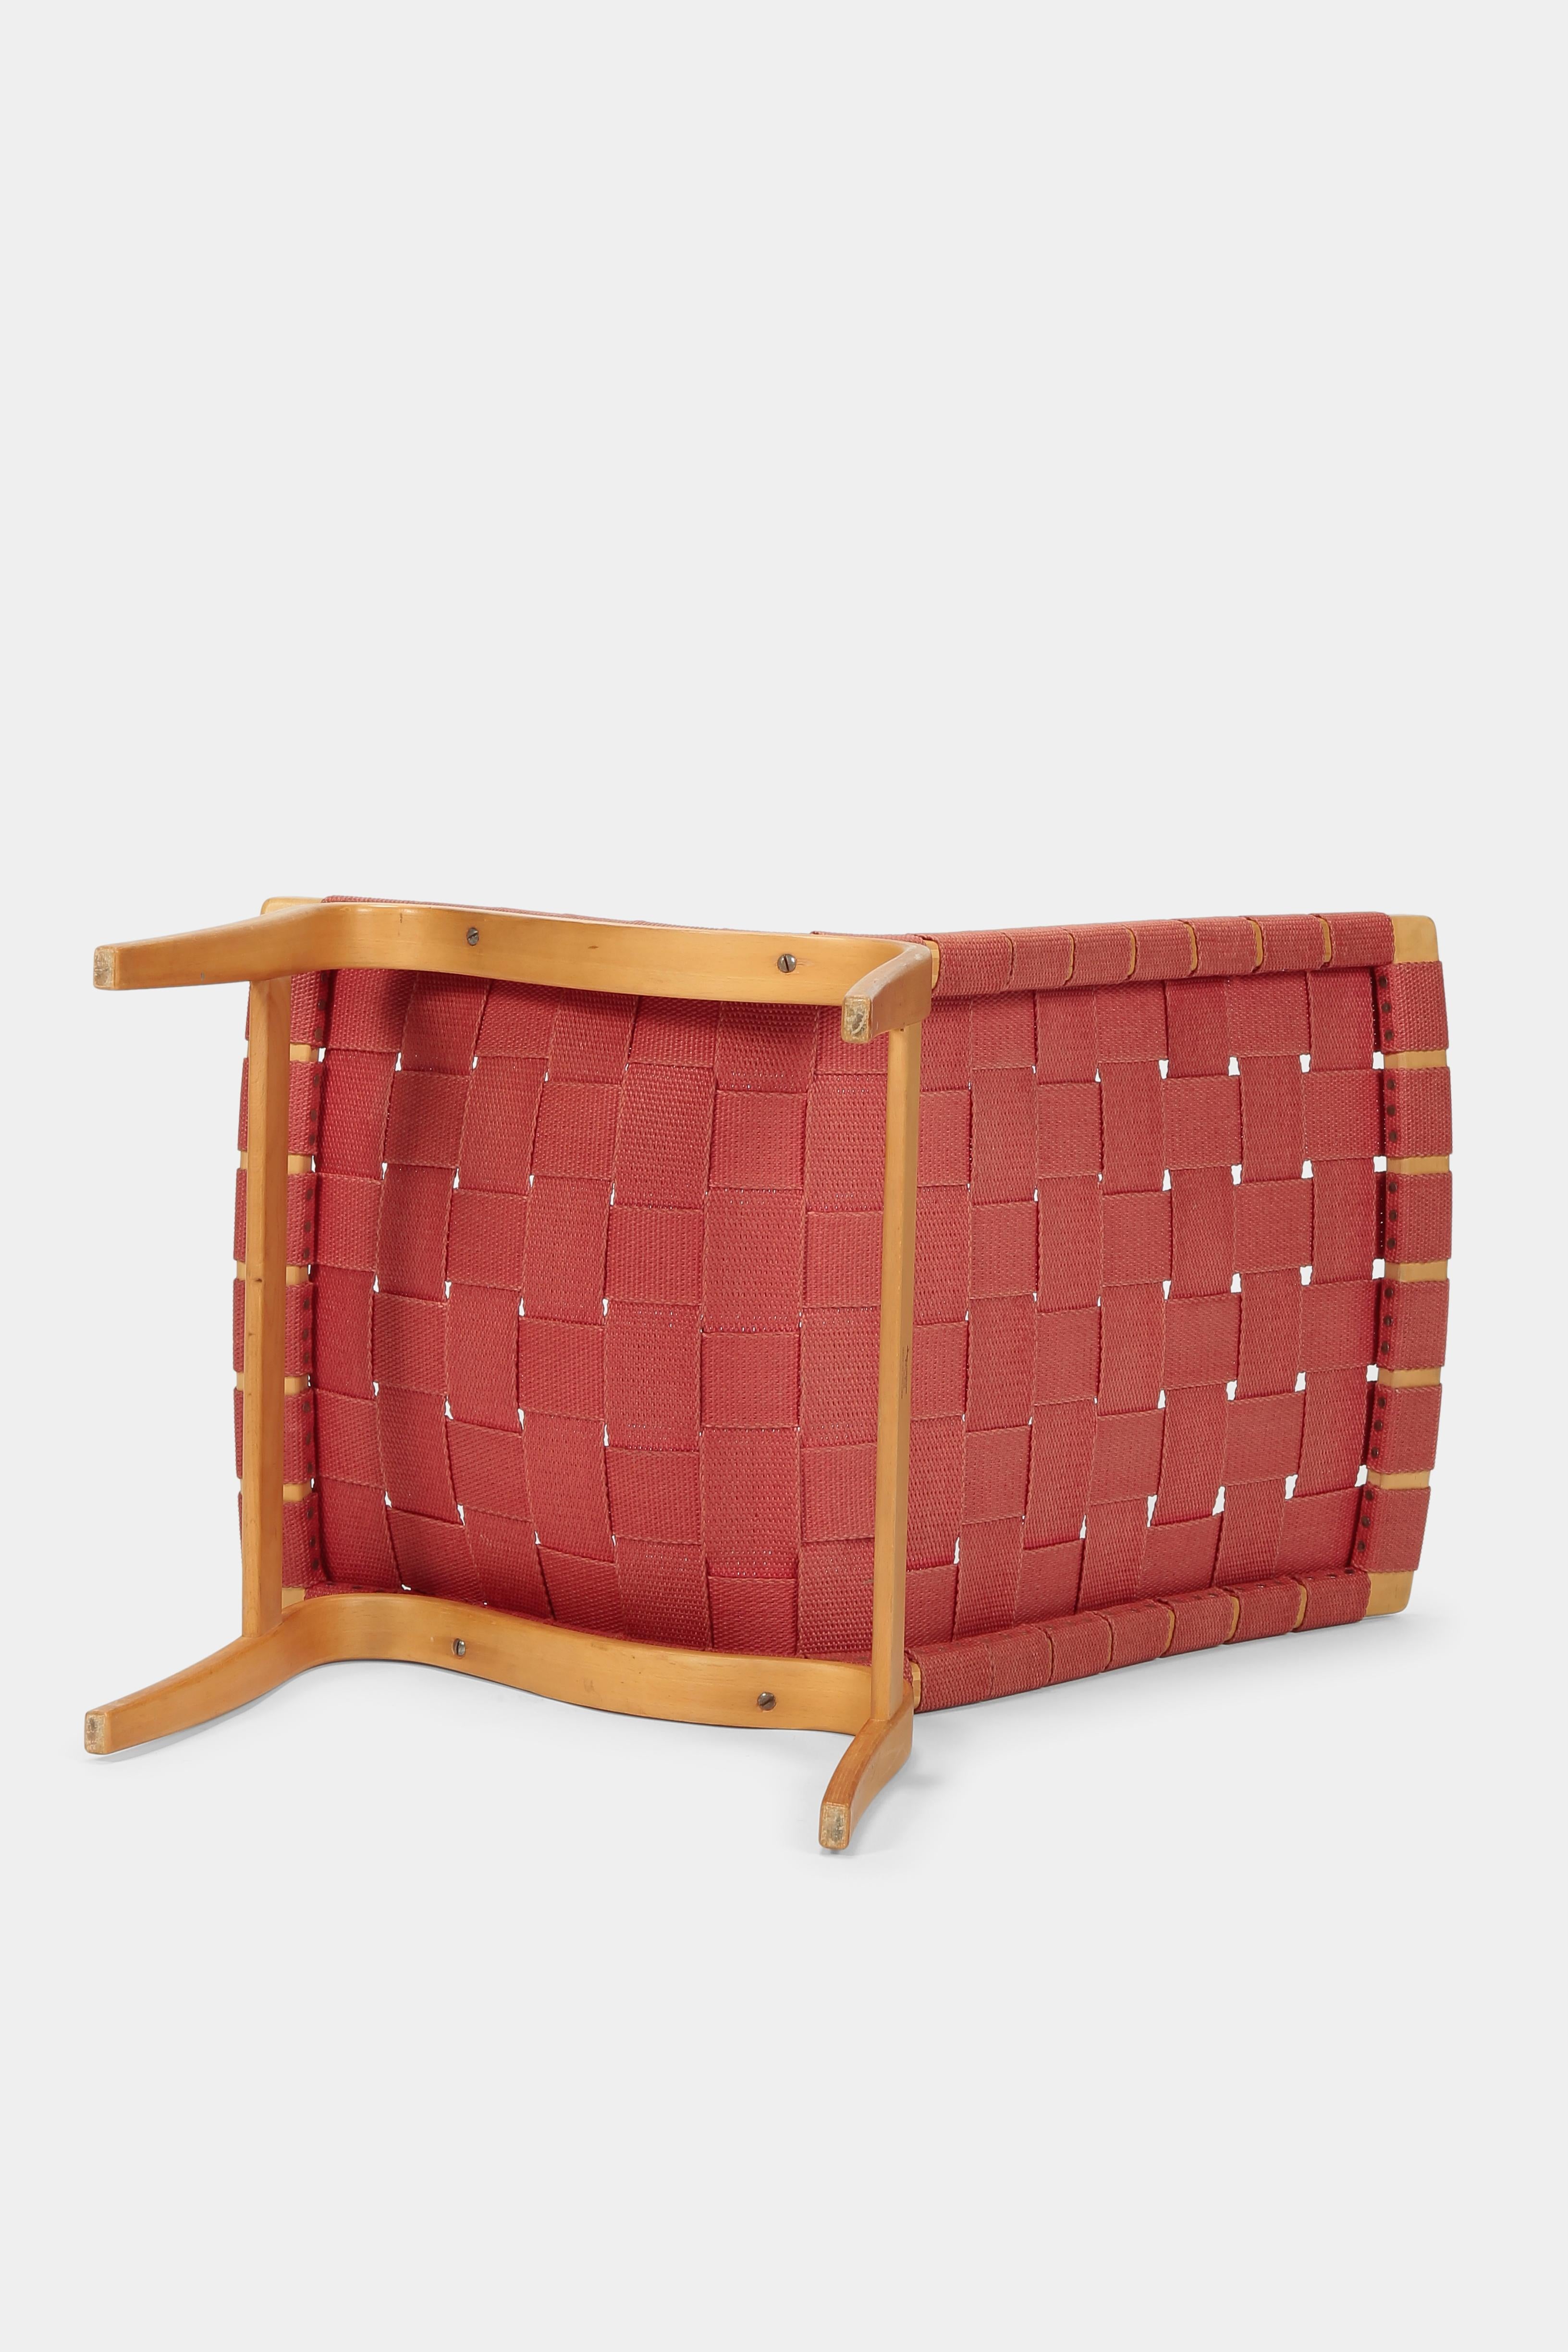 Bruno Mathsson ‘Eva’ Chair 1941 For Sale 4